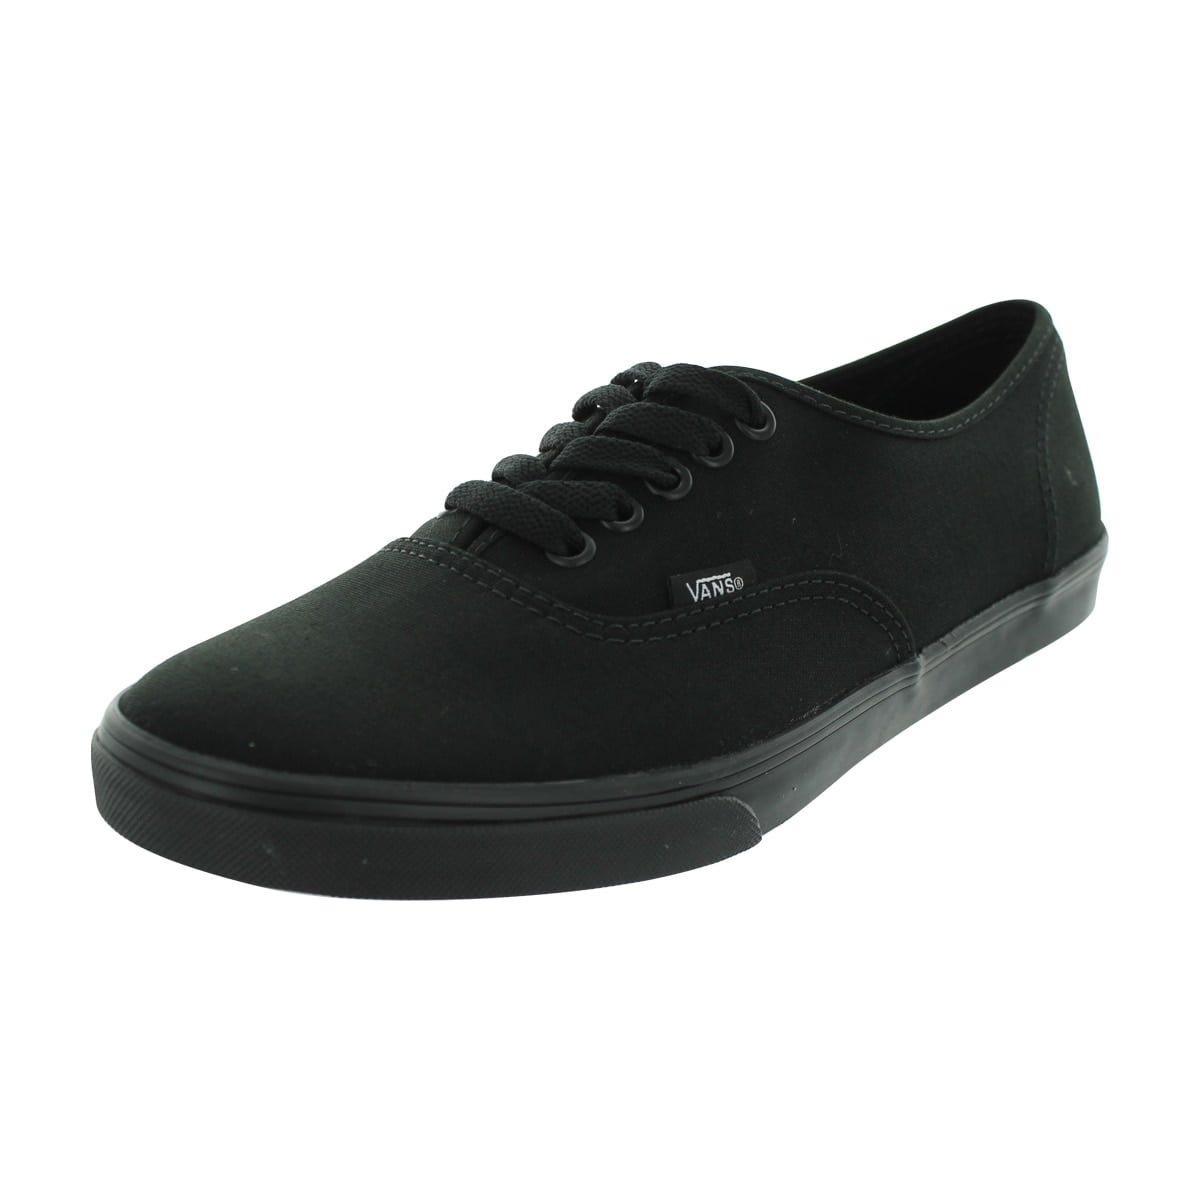 Vans Authentic Lo Pro Black Canvas Skate Shoes Walmart.com